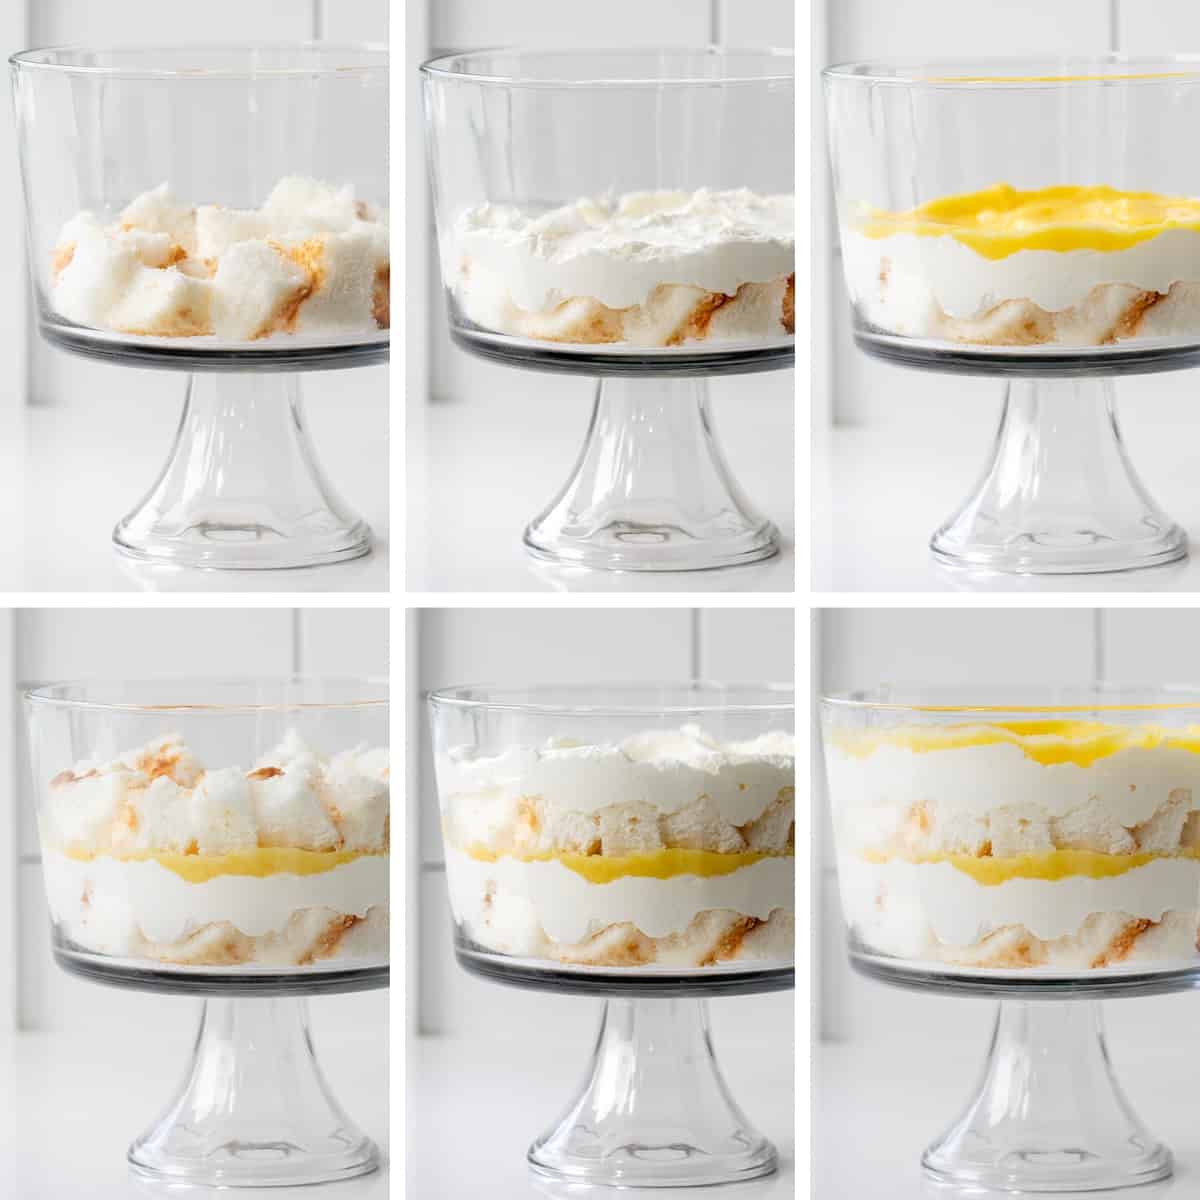 Steps for Assembling a Lemon Cream Trifle.